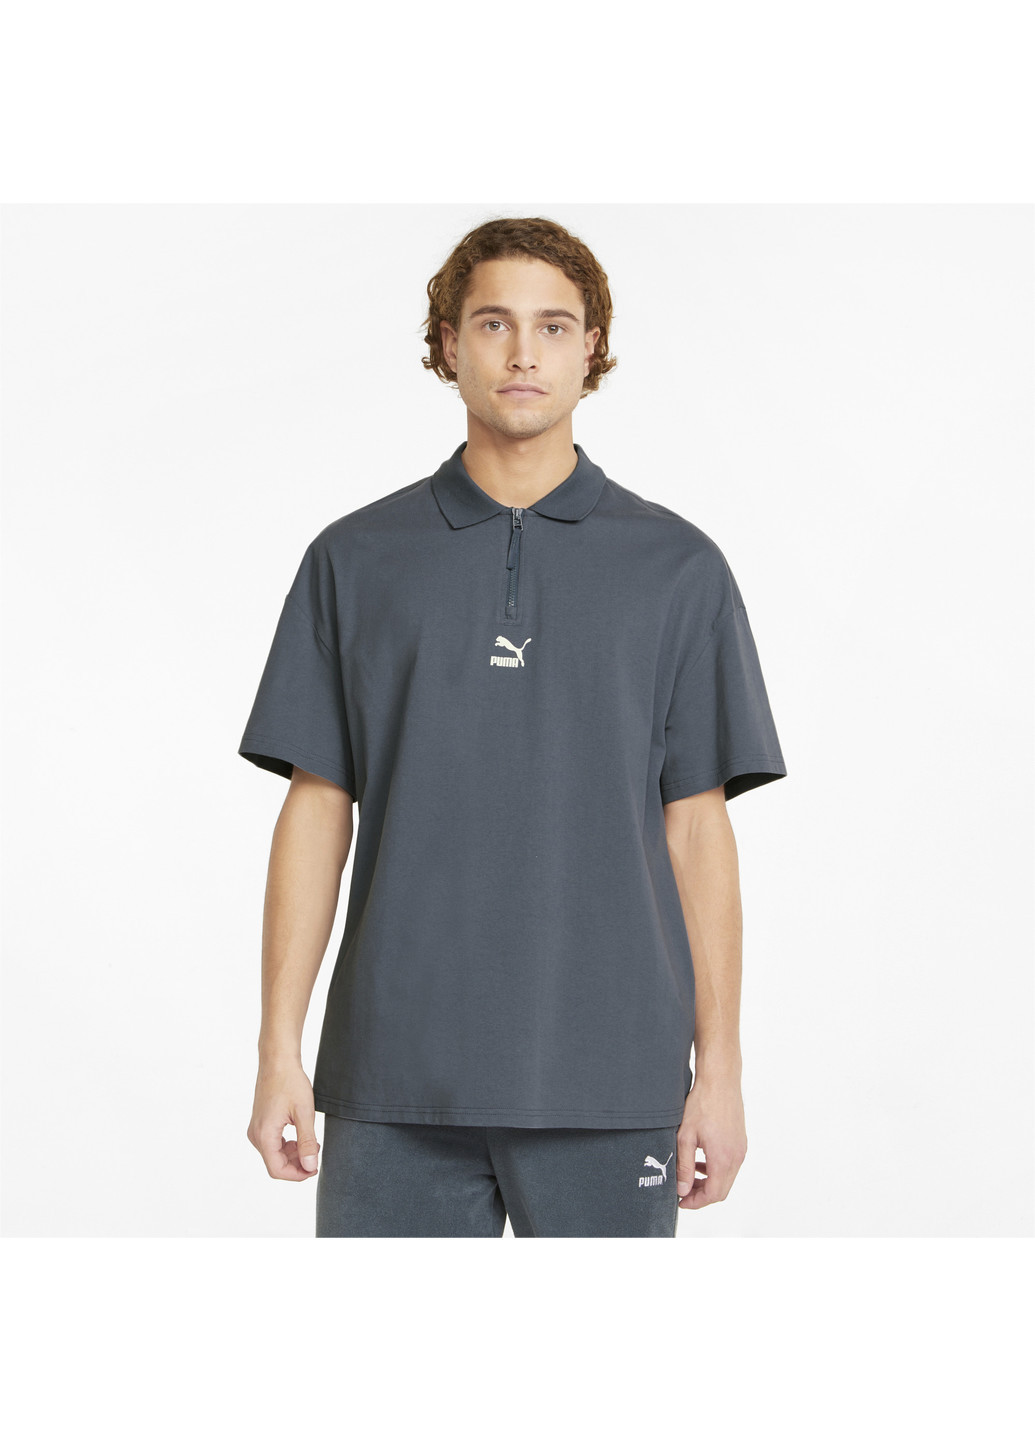 Серая футболка-поло classics boxy zip men's polo shirt для мужчин Puma однотонная